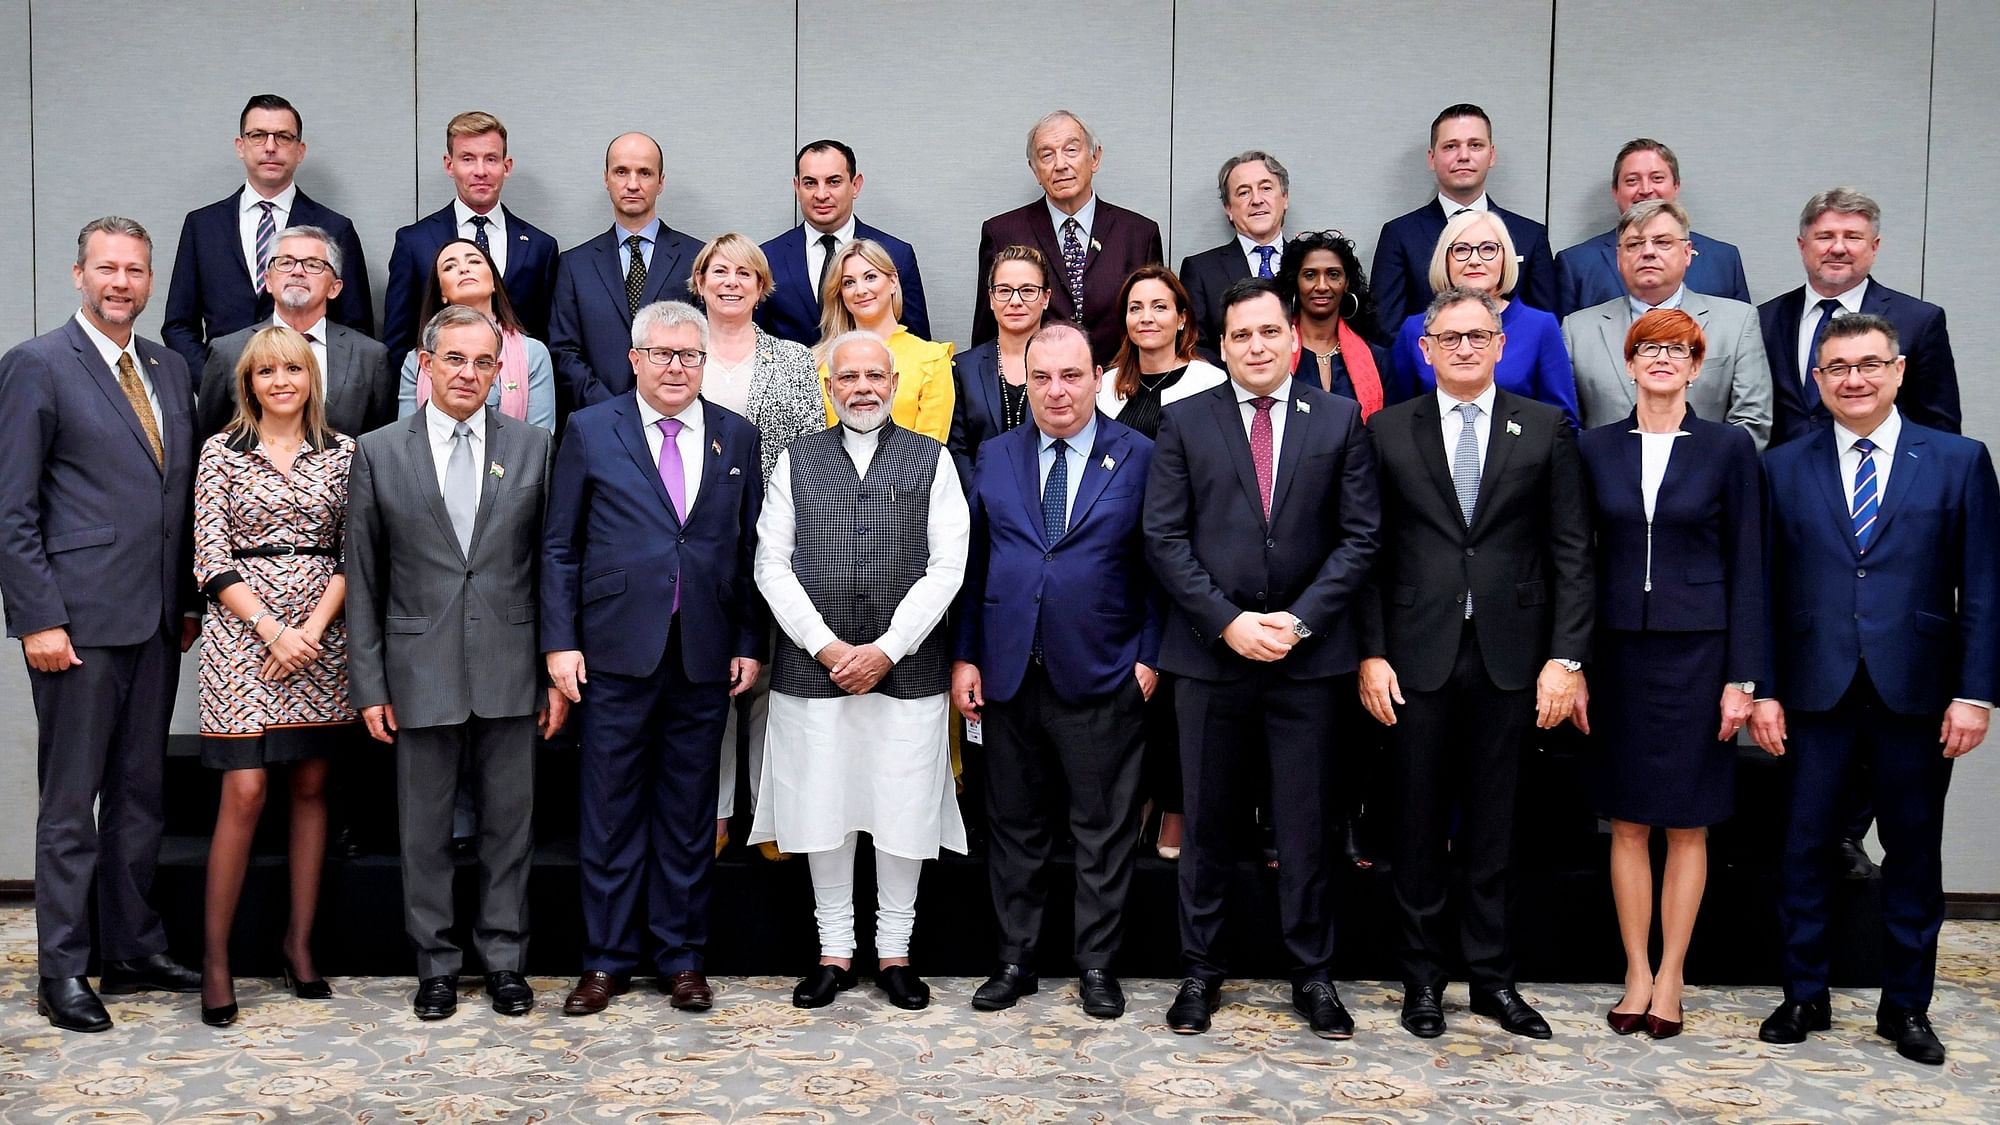 PM Narendra Modi met the members of European Parliament in New Delhi on 28 October.